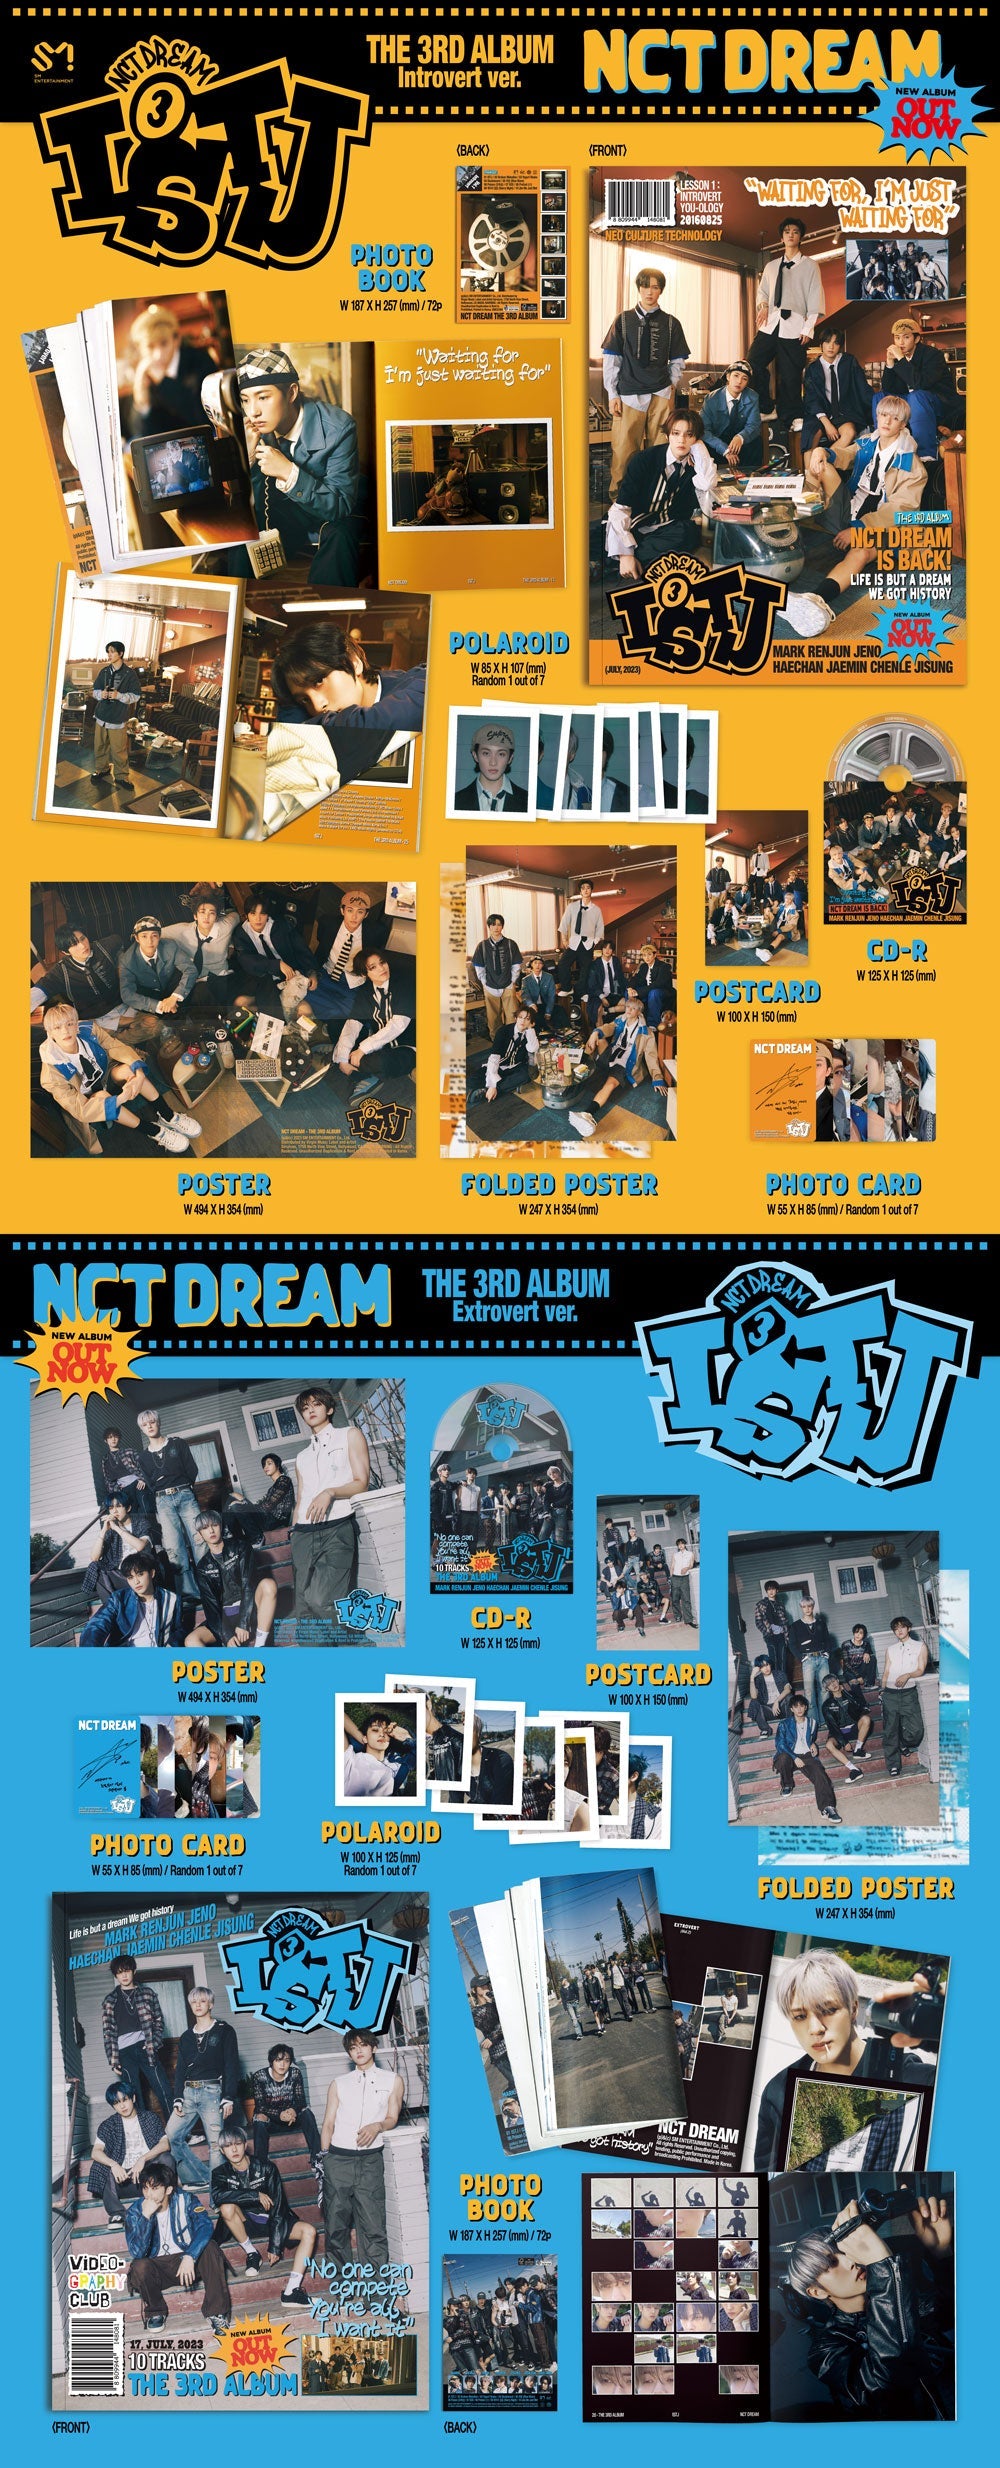 NCT DREAM 3RD FULL ALBUM [ISTJ/PHOTO BOOK VER.]